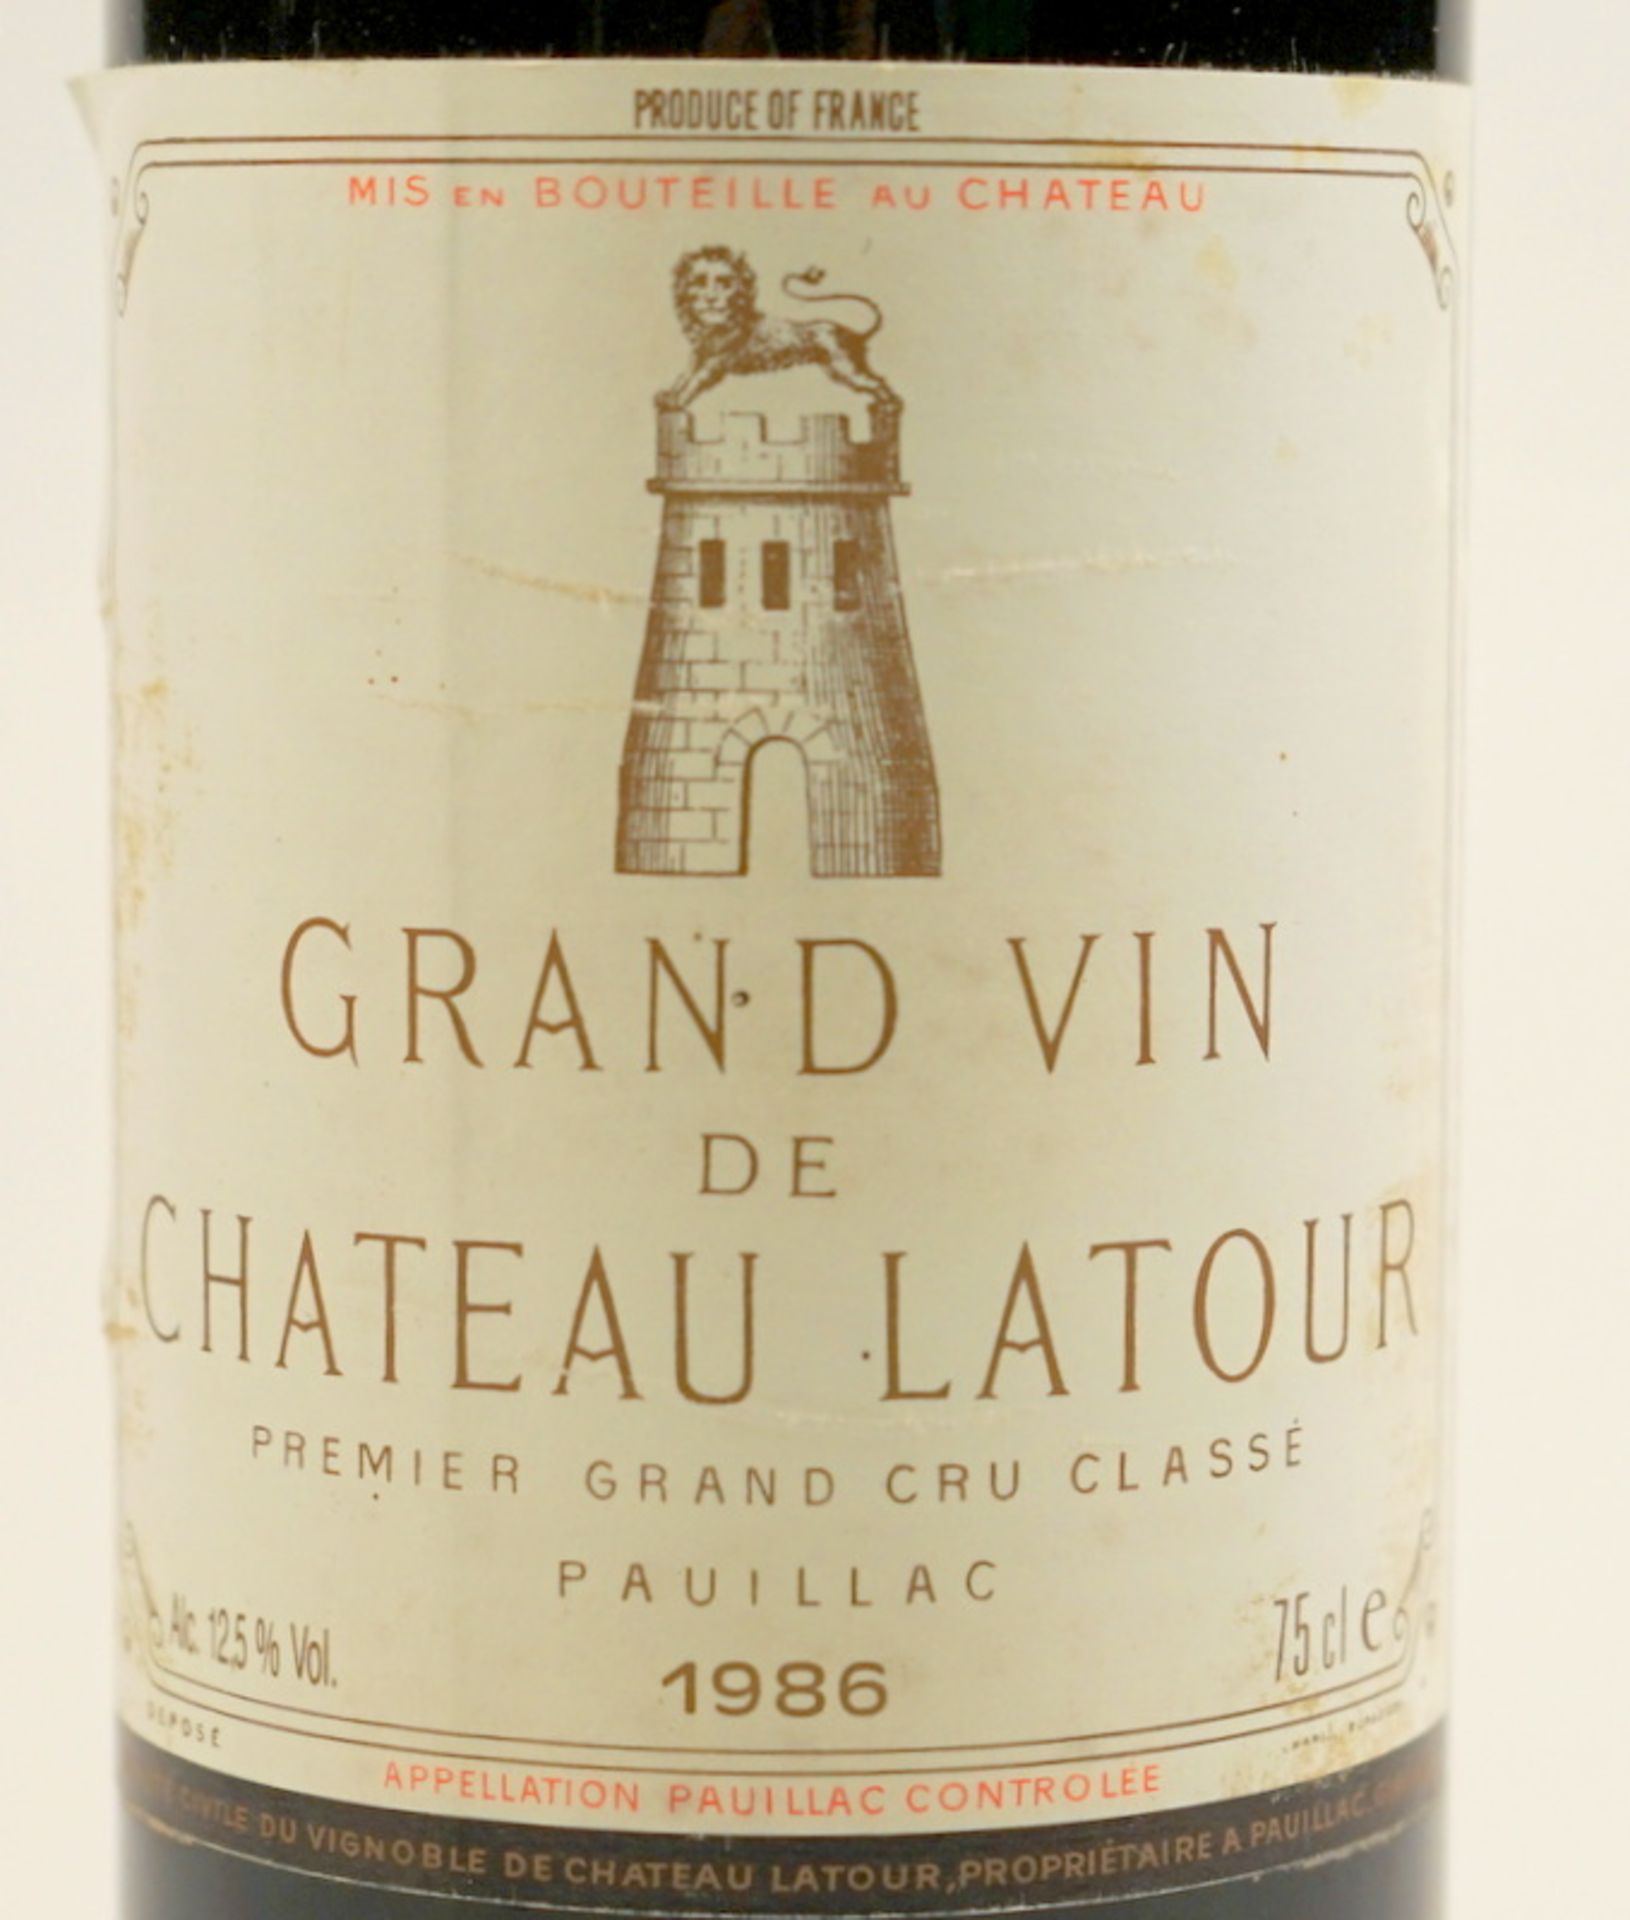 Grand Vin de Chateau Latour, Premier Grand Cru Classé, Paulliac, 1986,Rotwein, Etikett minim. - Image 3 of 3